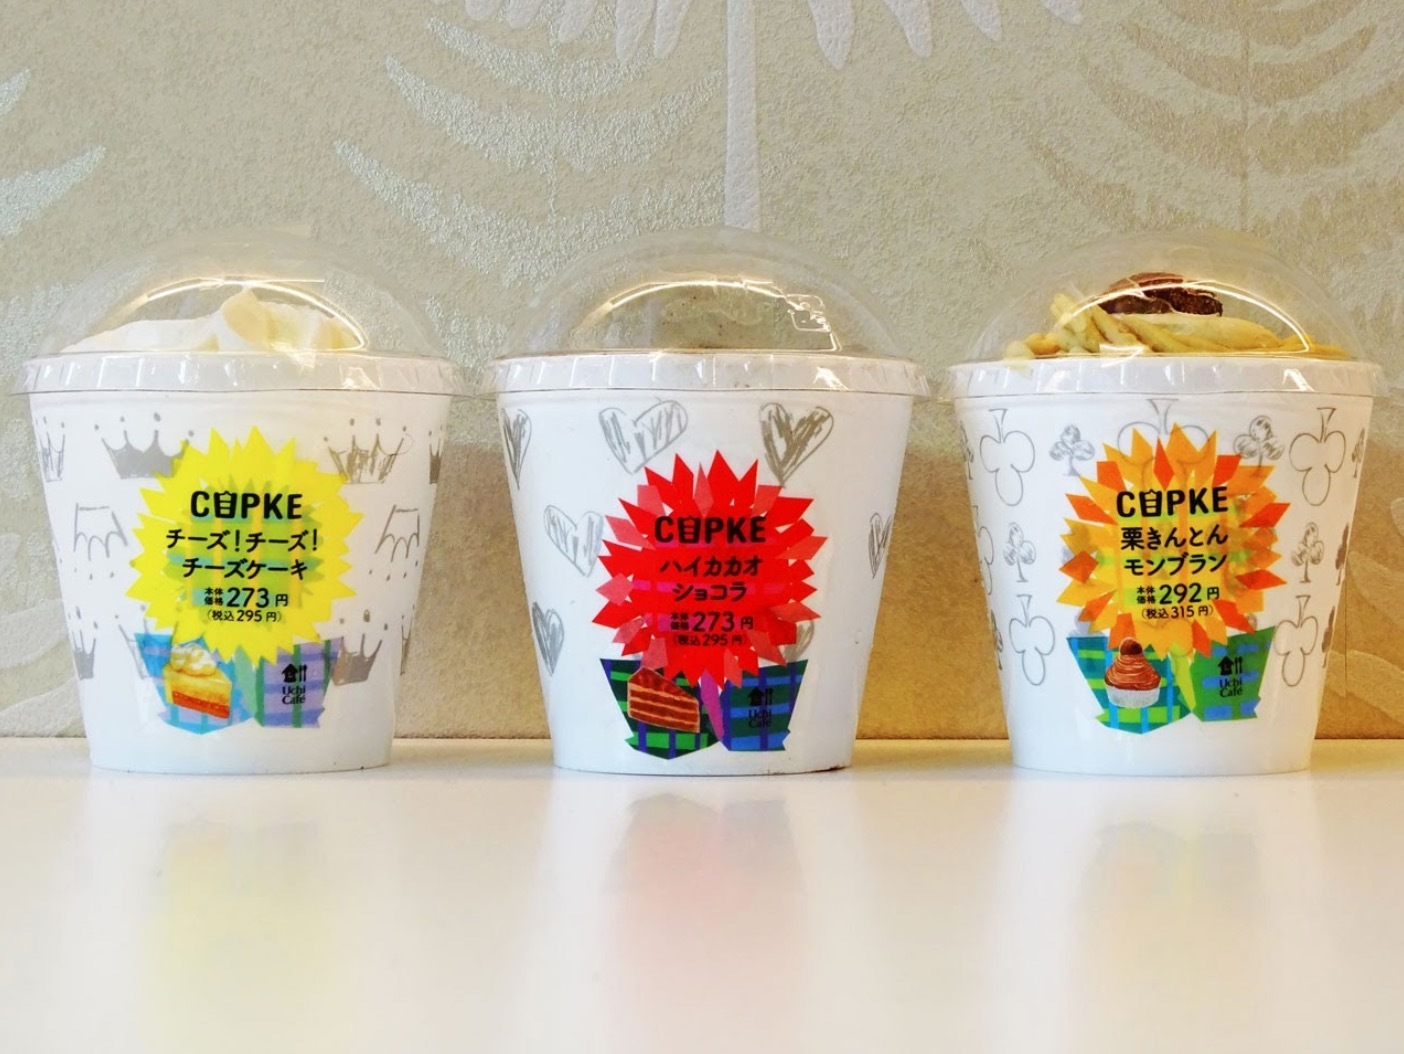 【新発売】ローソンのオリジナルカップケーキ「CUPKE」に新ラインナップが登場！